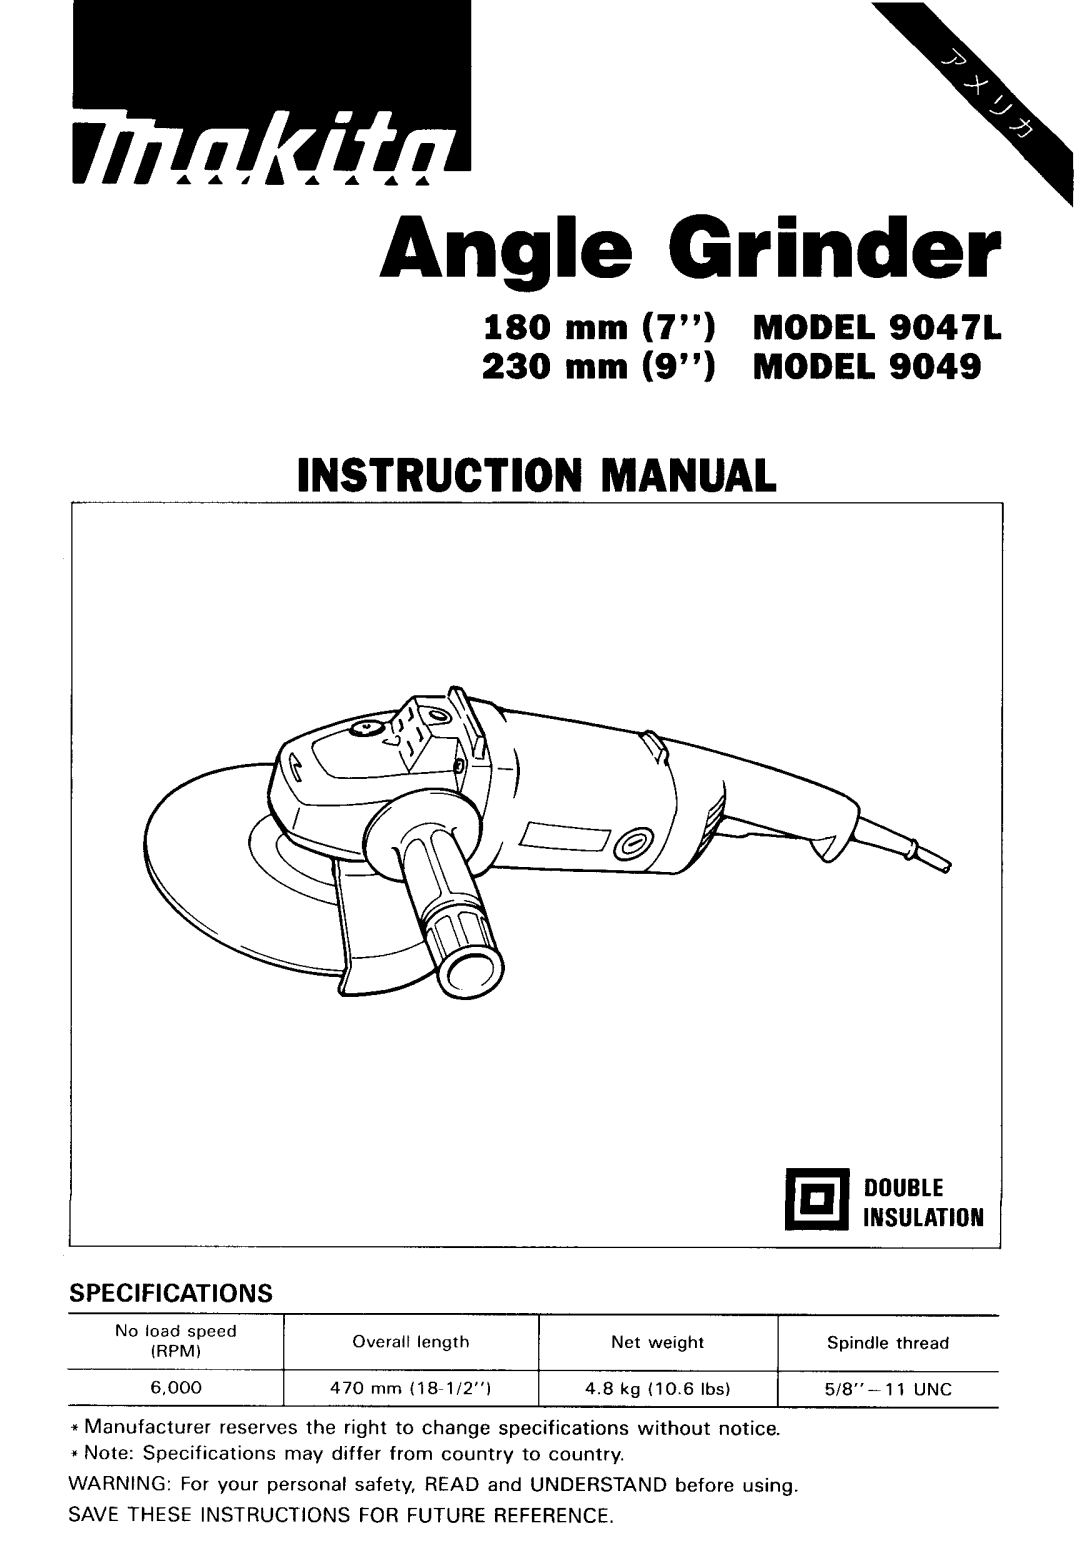 Makita 90471, 9049 instruction manual Angle Grinder 